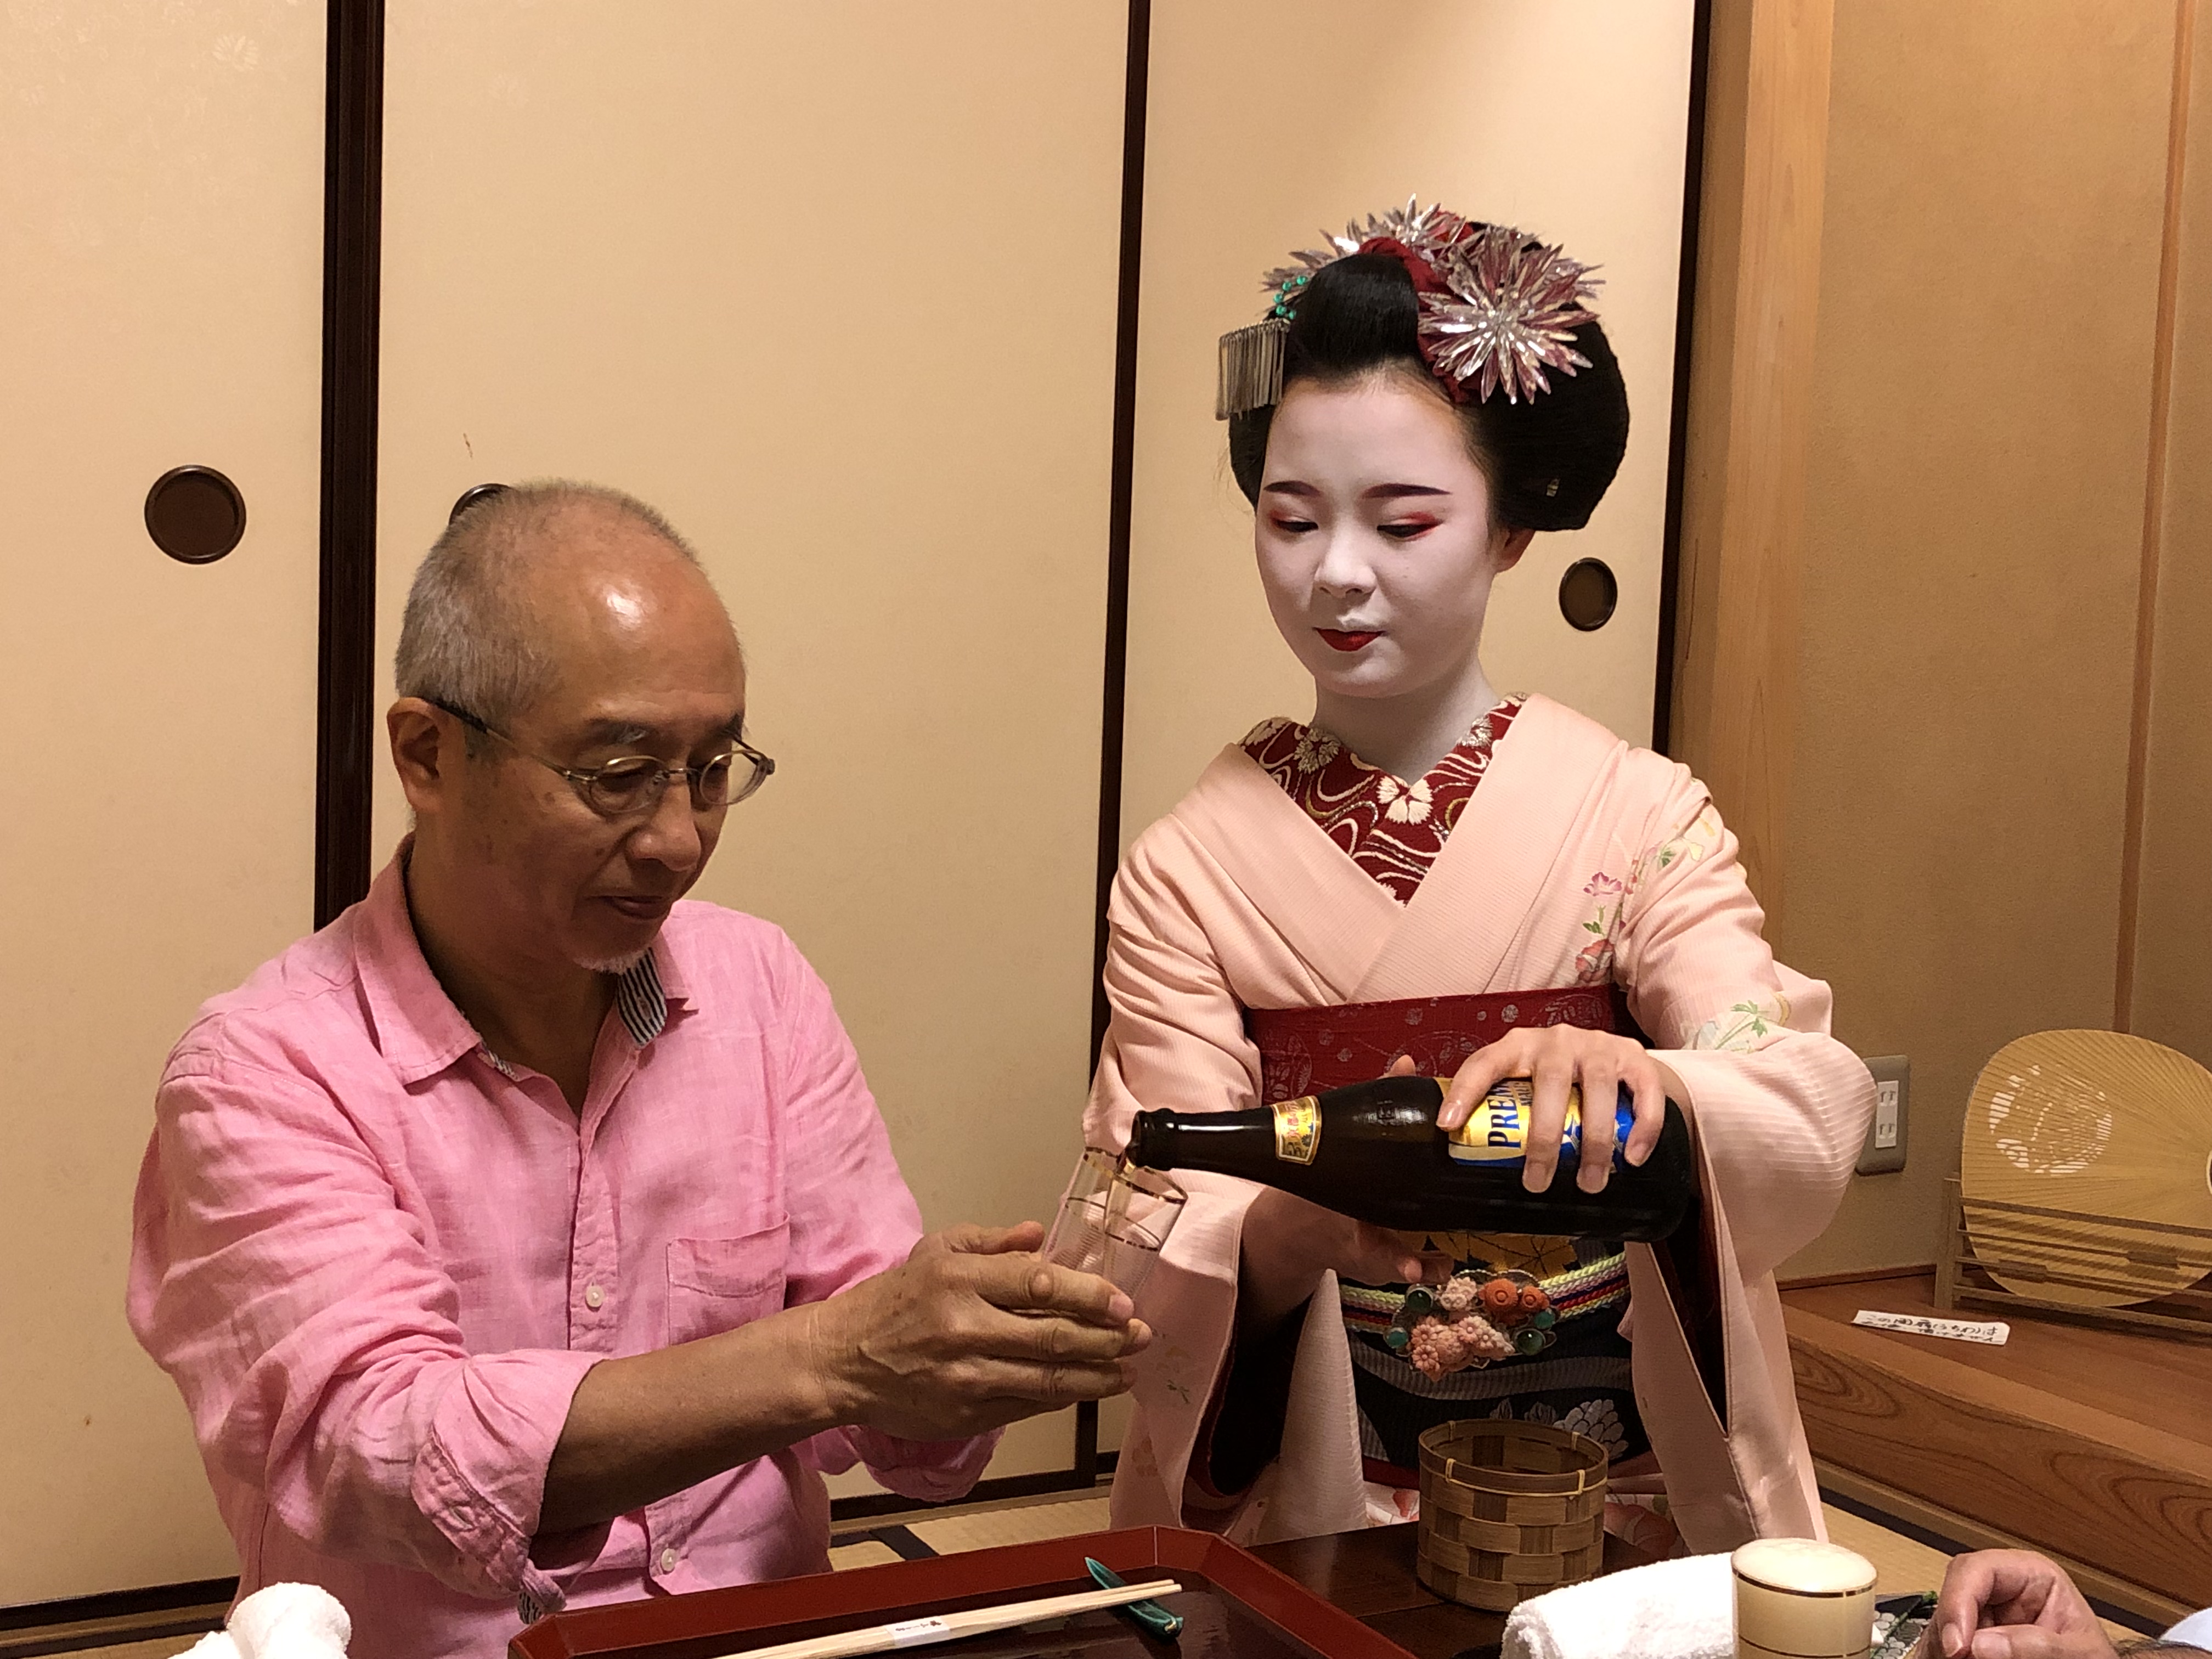 たった１年で新人をプロにする方法 祇園お舞妓さんから学ぶ 体験セミナー 山本由紀子の京町家さろん